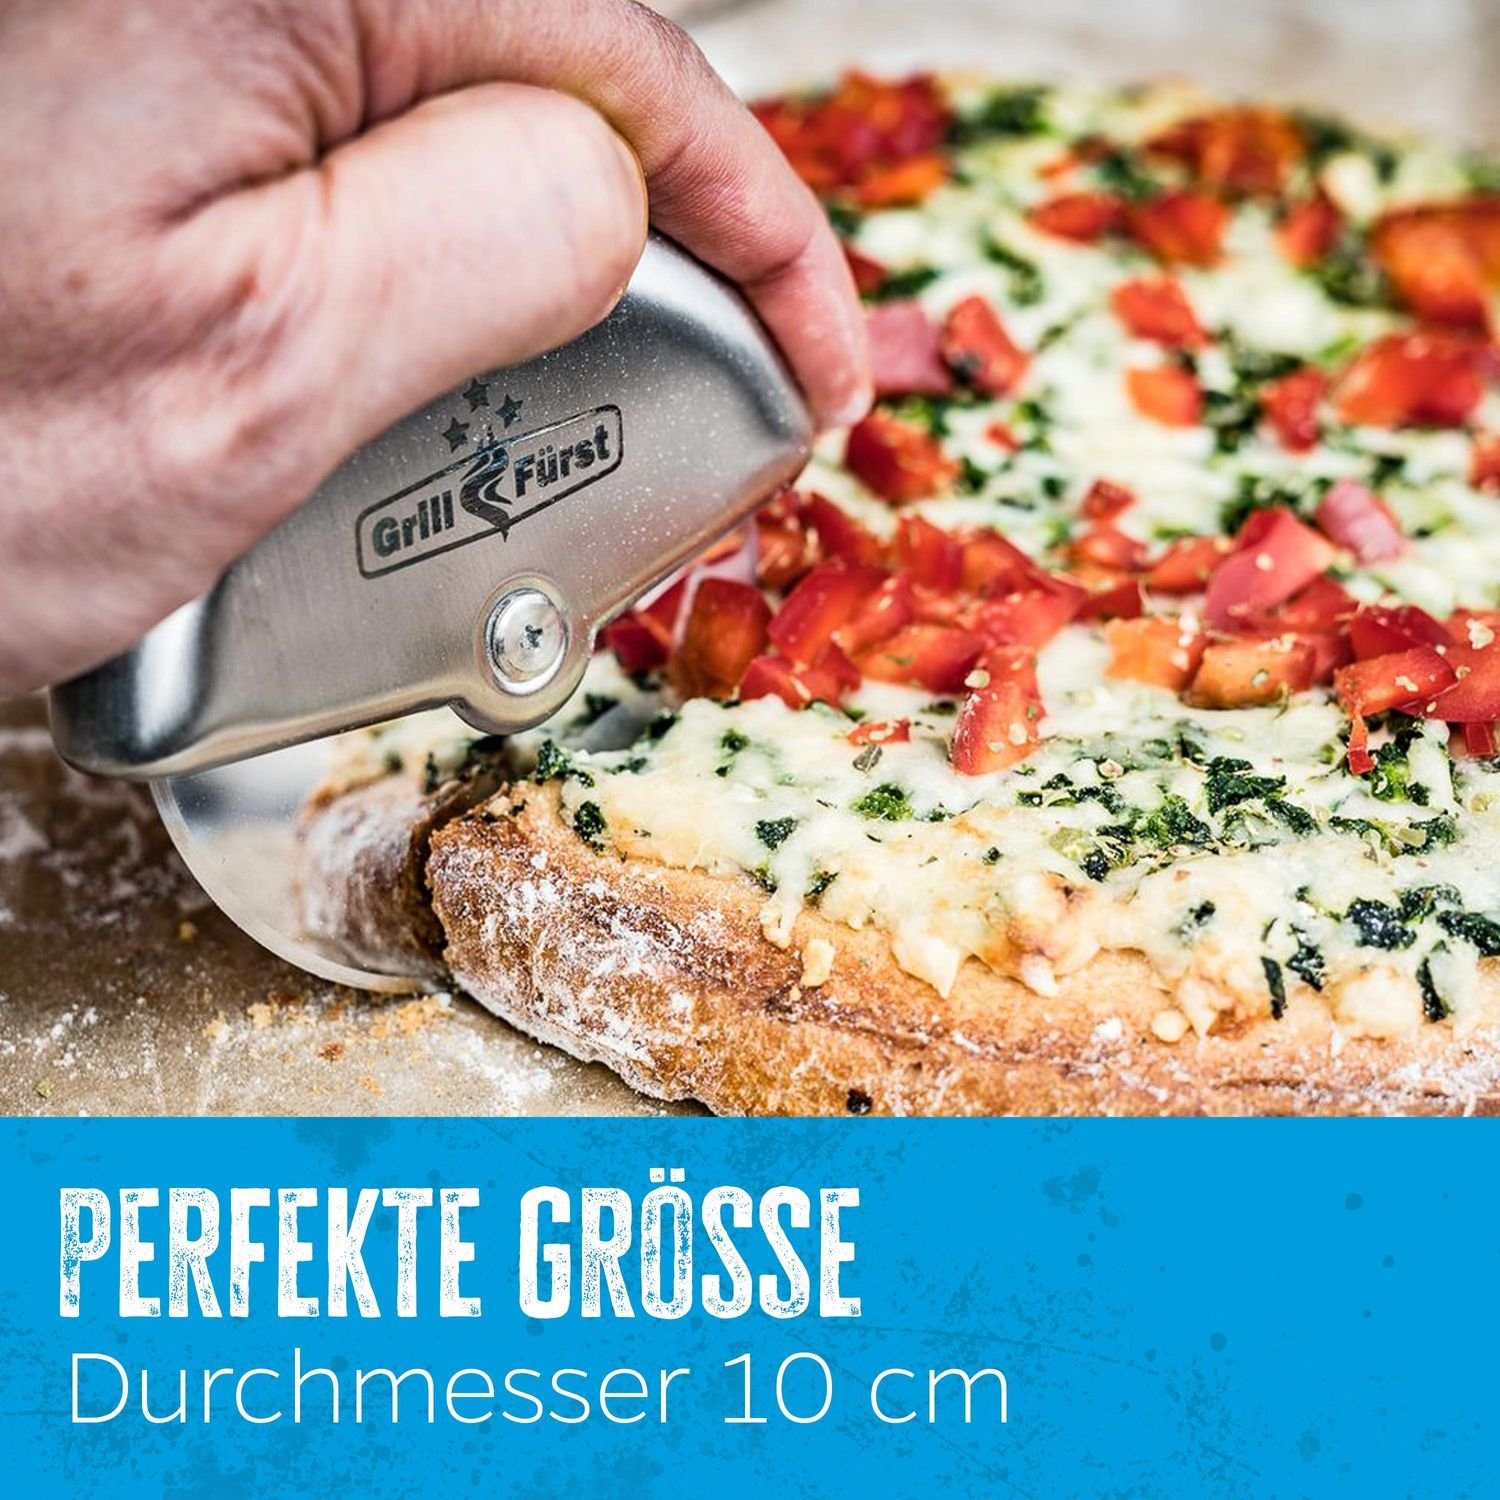 Grillfürst Grillfürst Edelstahl Aromaplanke Pizzaschneider / Pizzarad 10cm